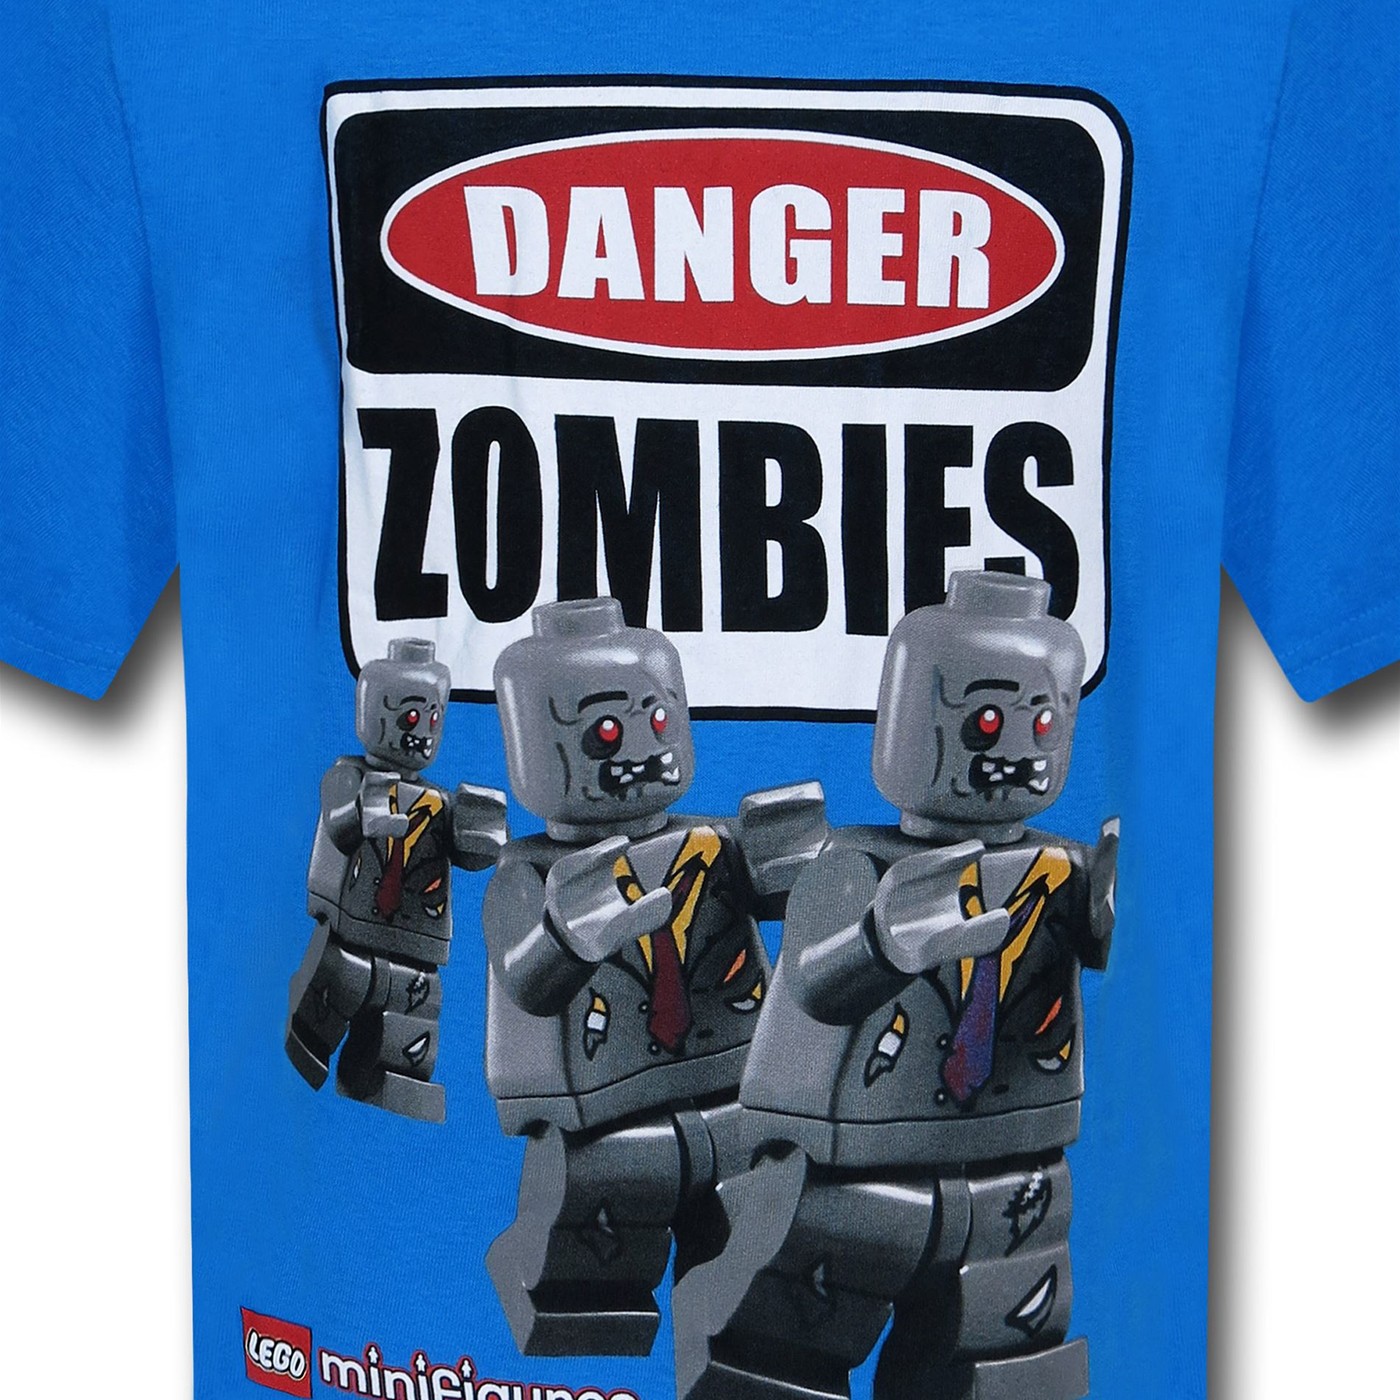 LEGO Danger Zombies Blue Kids T-Shirt